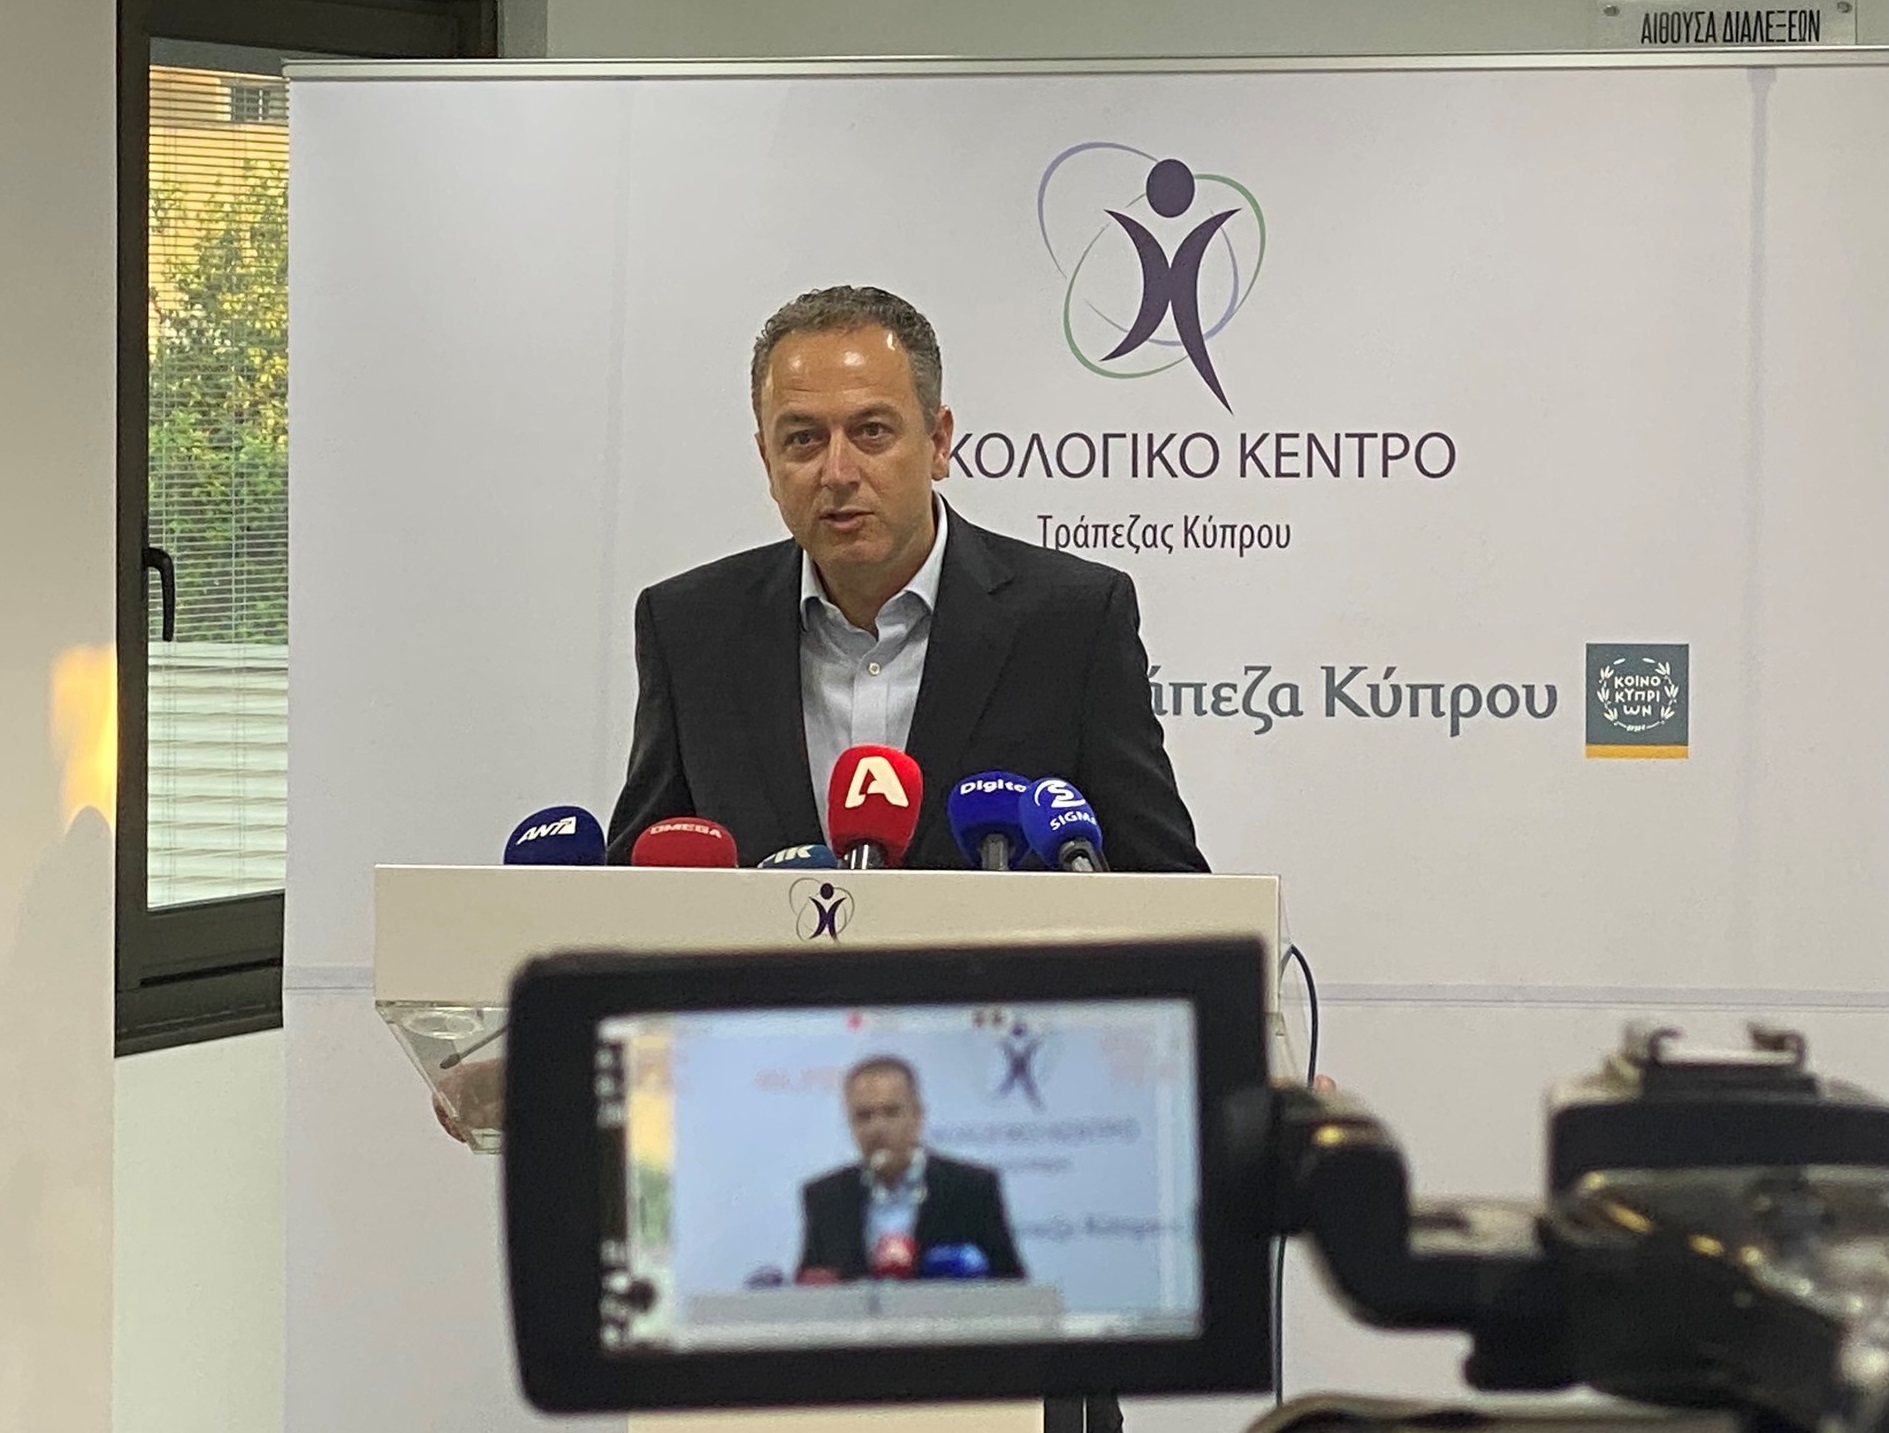 Επενδύσεις πέραν των €70 εκατ. στο Ογκολογικό Κέντρο Τράπεζας Κύπρου